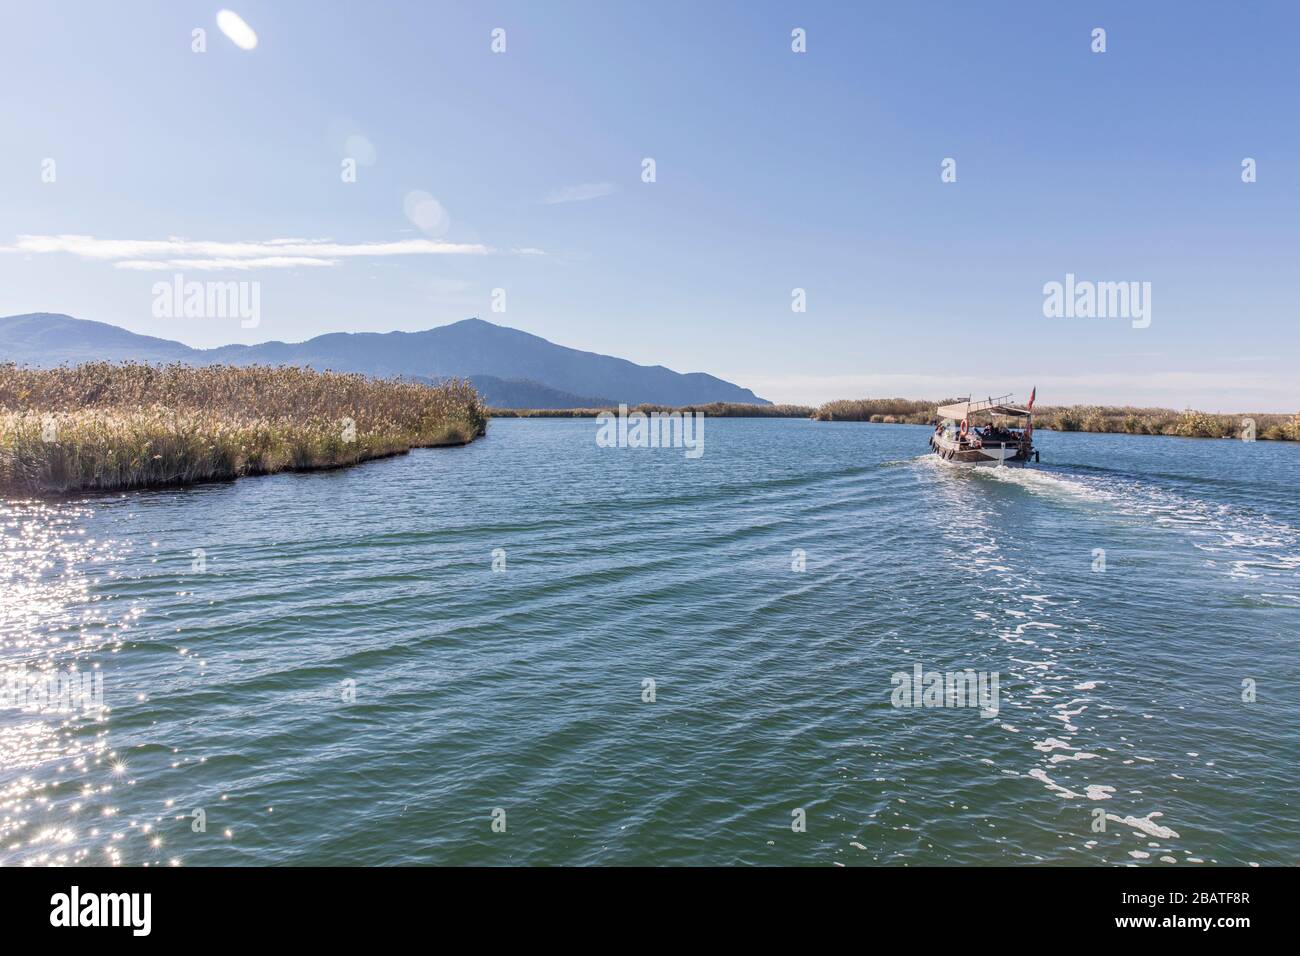 Dalyan River, Dalyan, Turkey Stock Photo